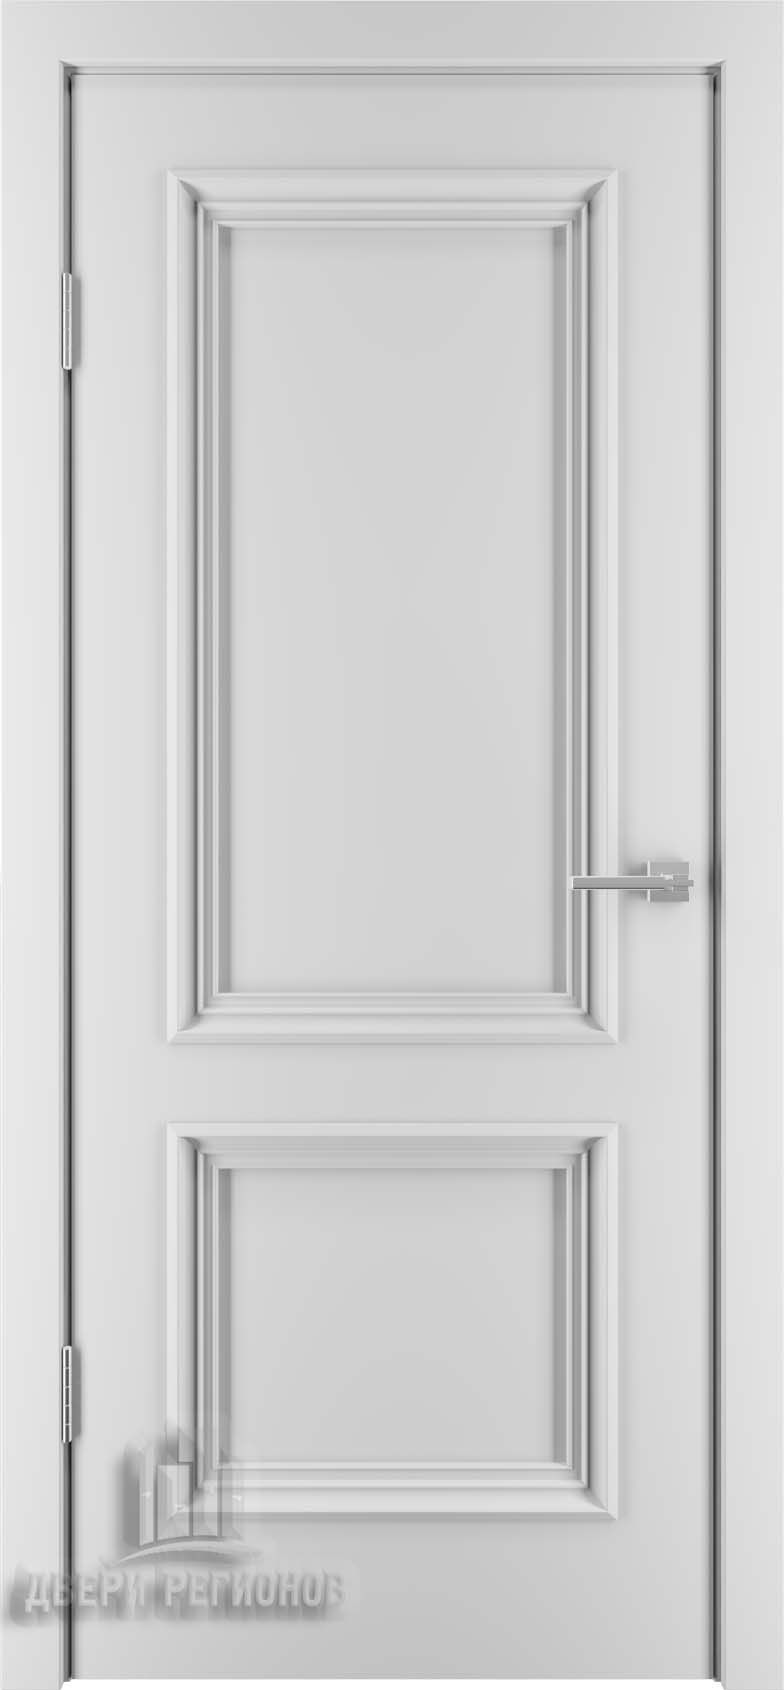 Дверь межкомнатная шпонированная (шпон натуральный + эмаль) Бергамо-4 белая эмаль RAL9003 глухая